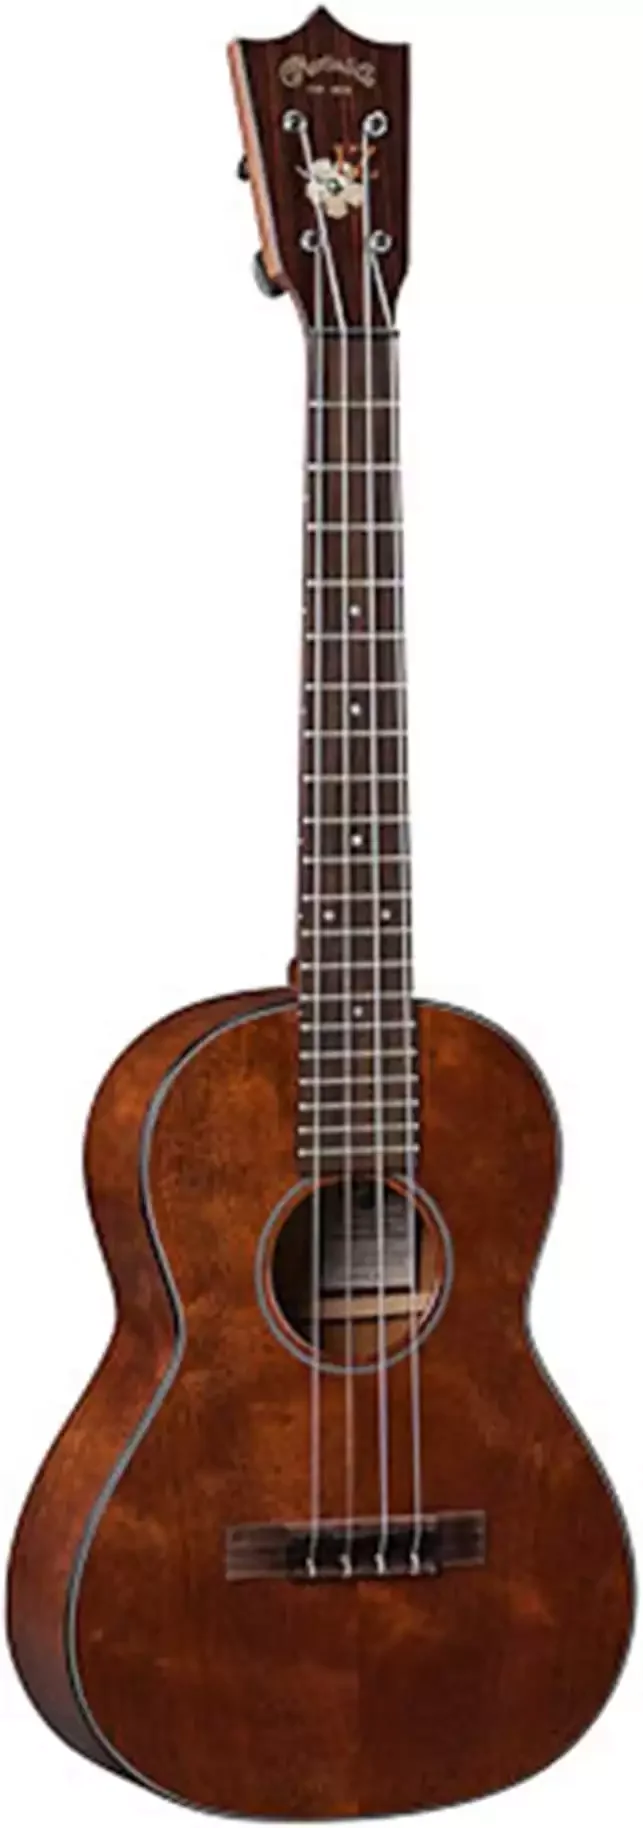 Martin Guitar 1T IZ Acoustic Ukulele